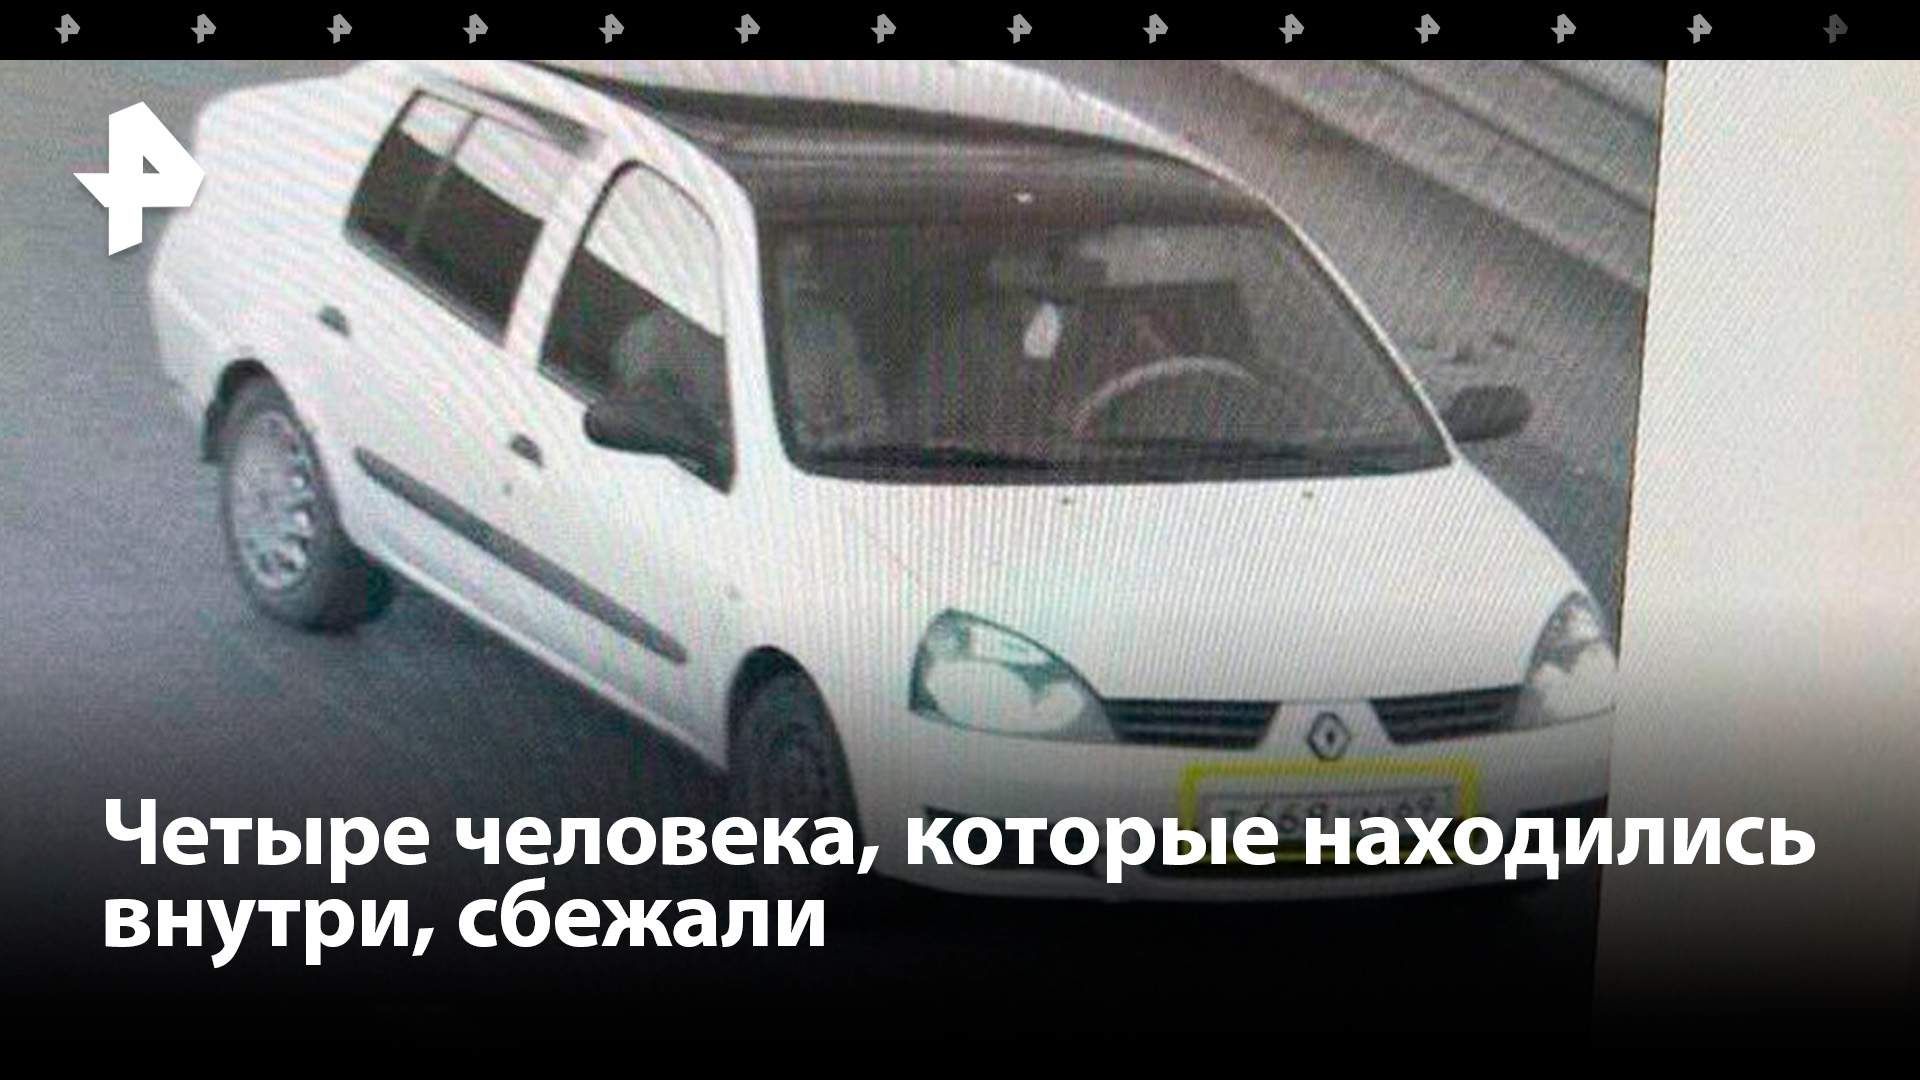 Поиск террористов:  в Брянской области задержали автомобиль по ориентировке после нападения